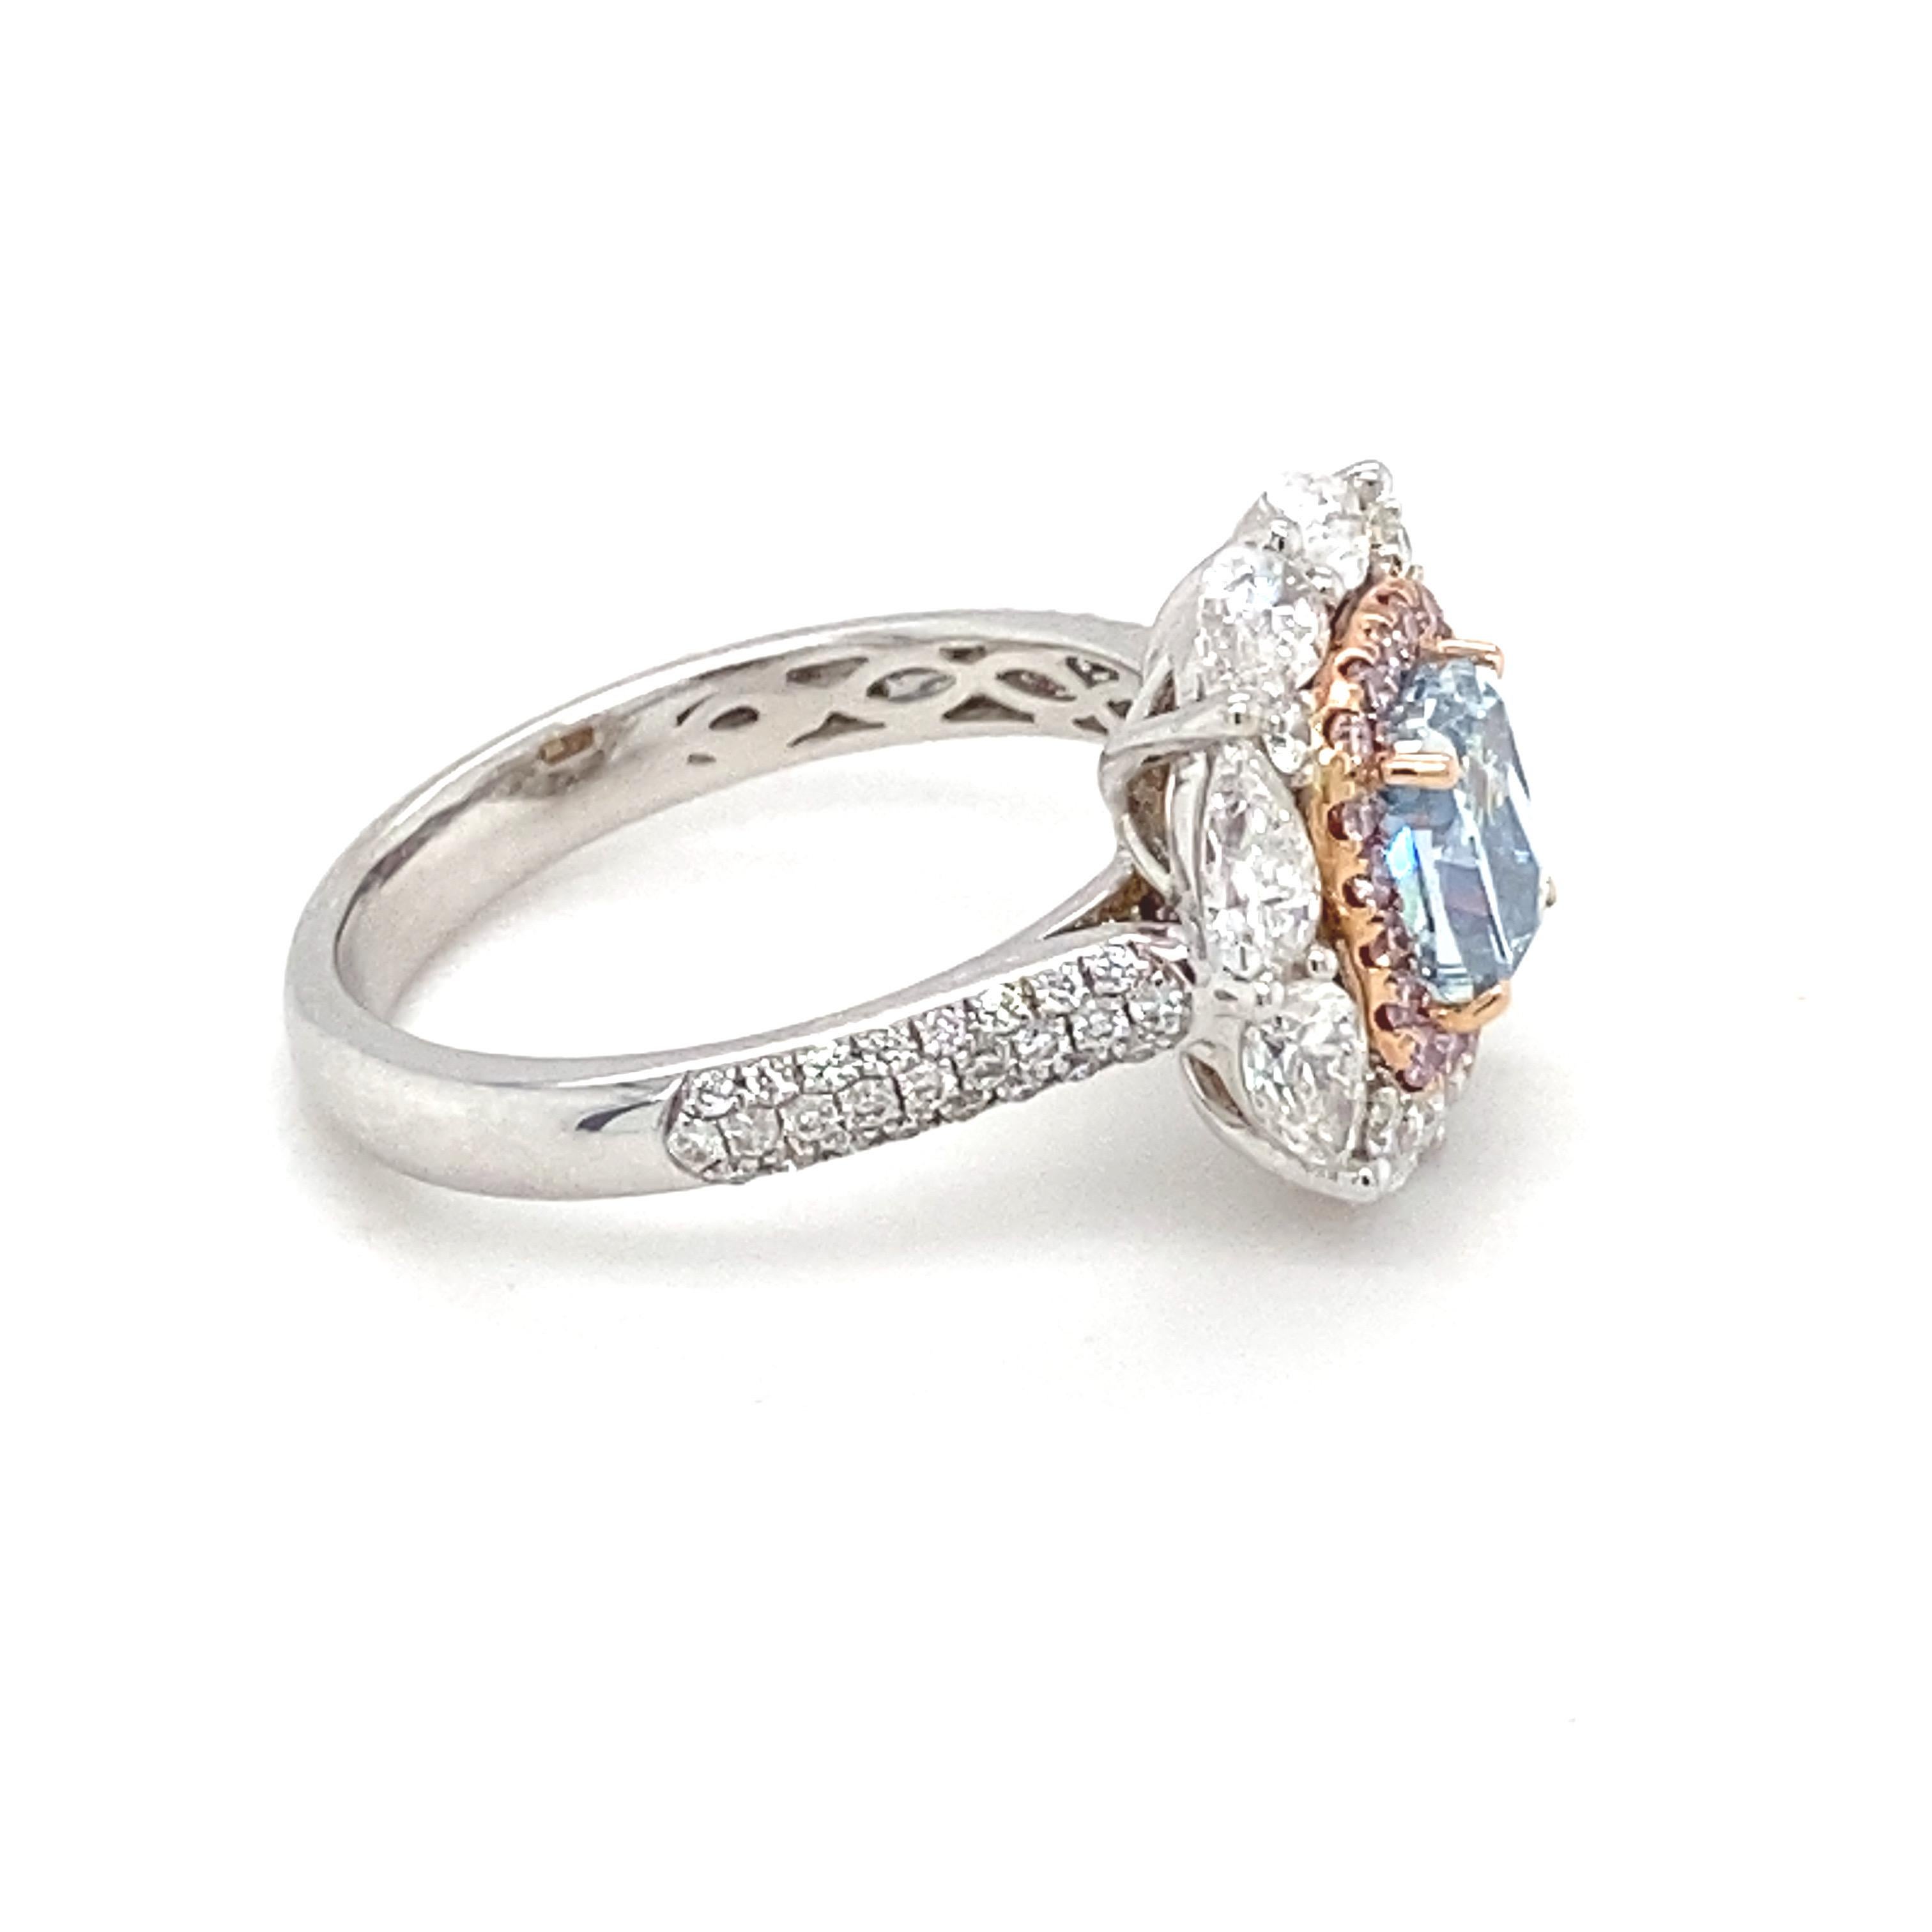 De las mujeres Anillo de compromiso con diamante azul en cojín de 1,20 quilates certificado por el GIA en venta